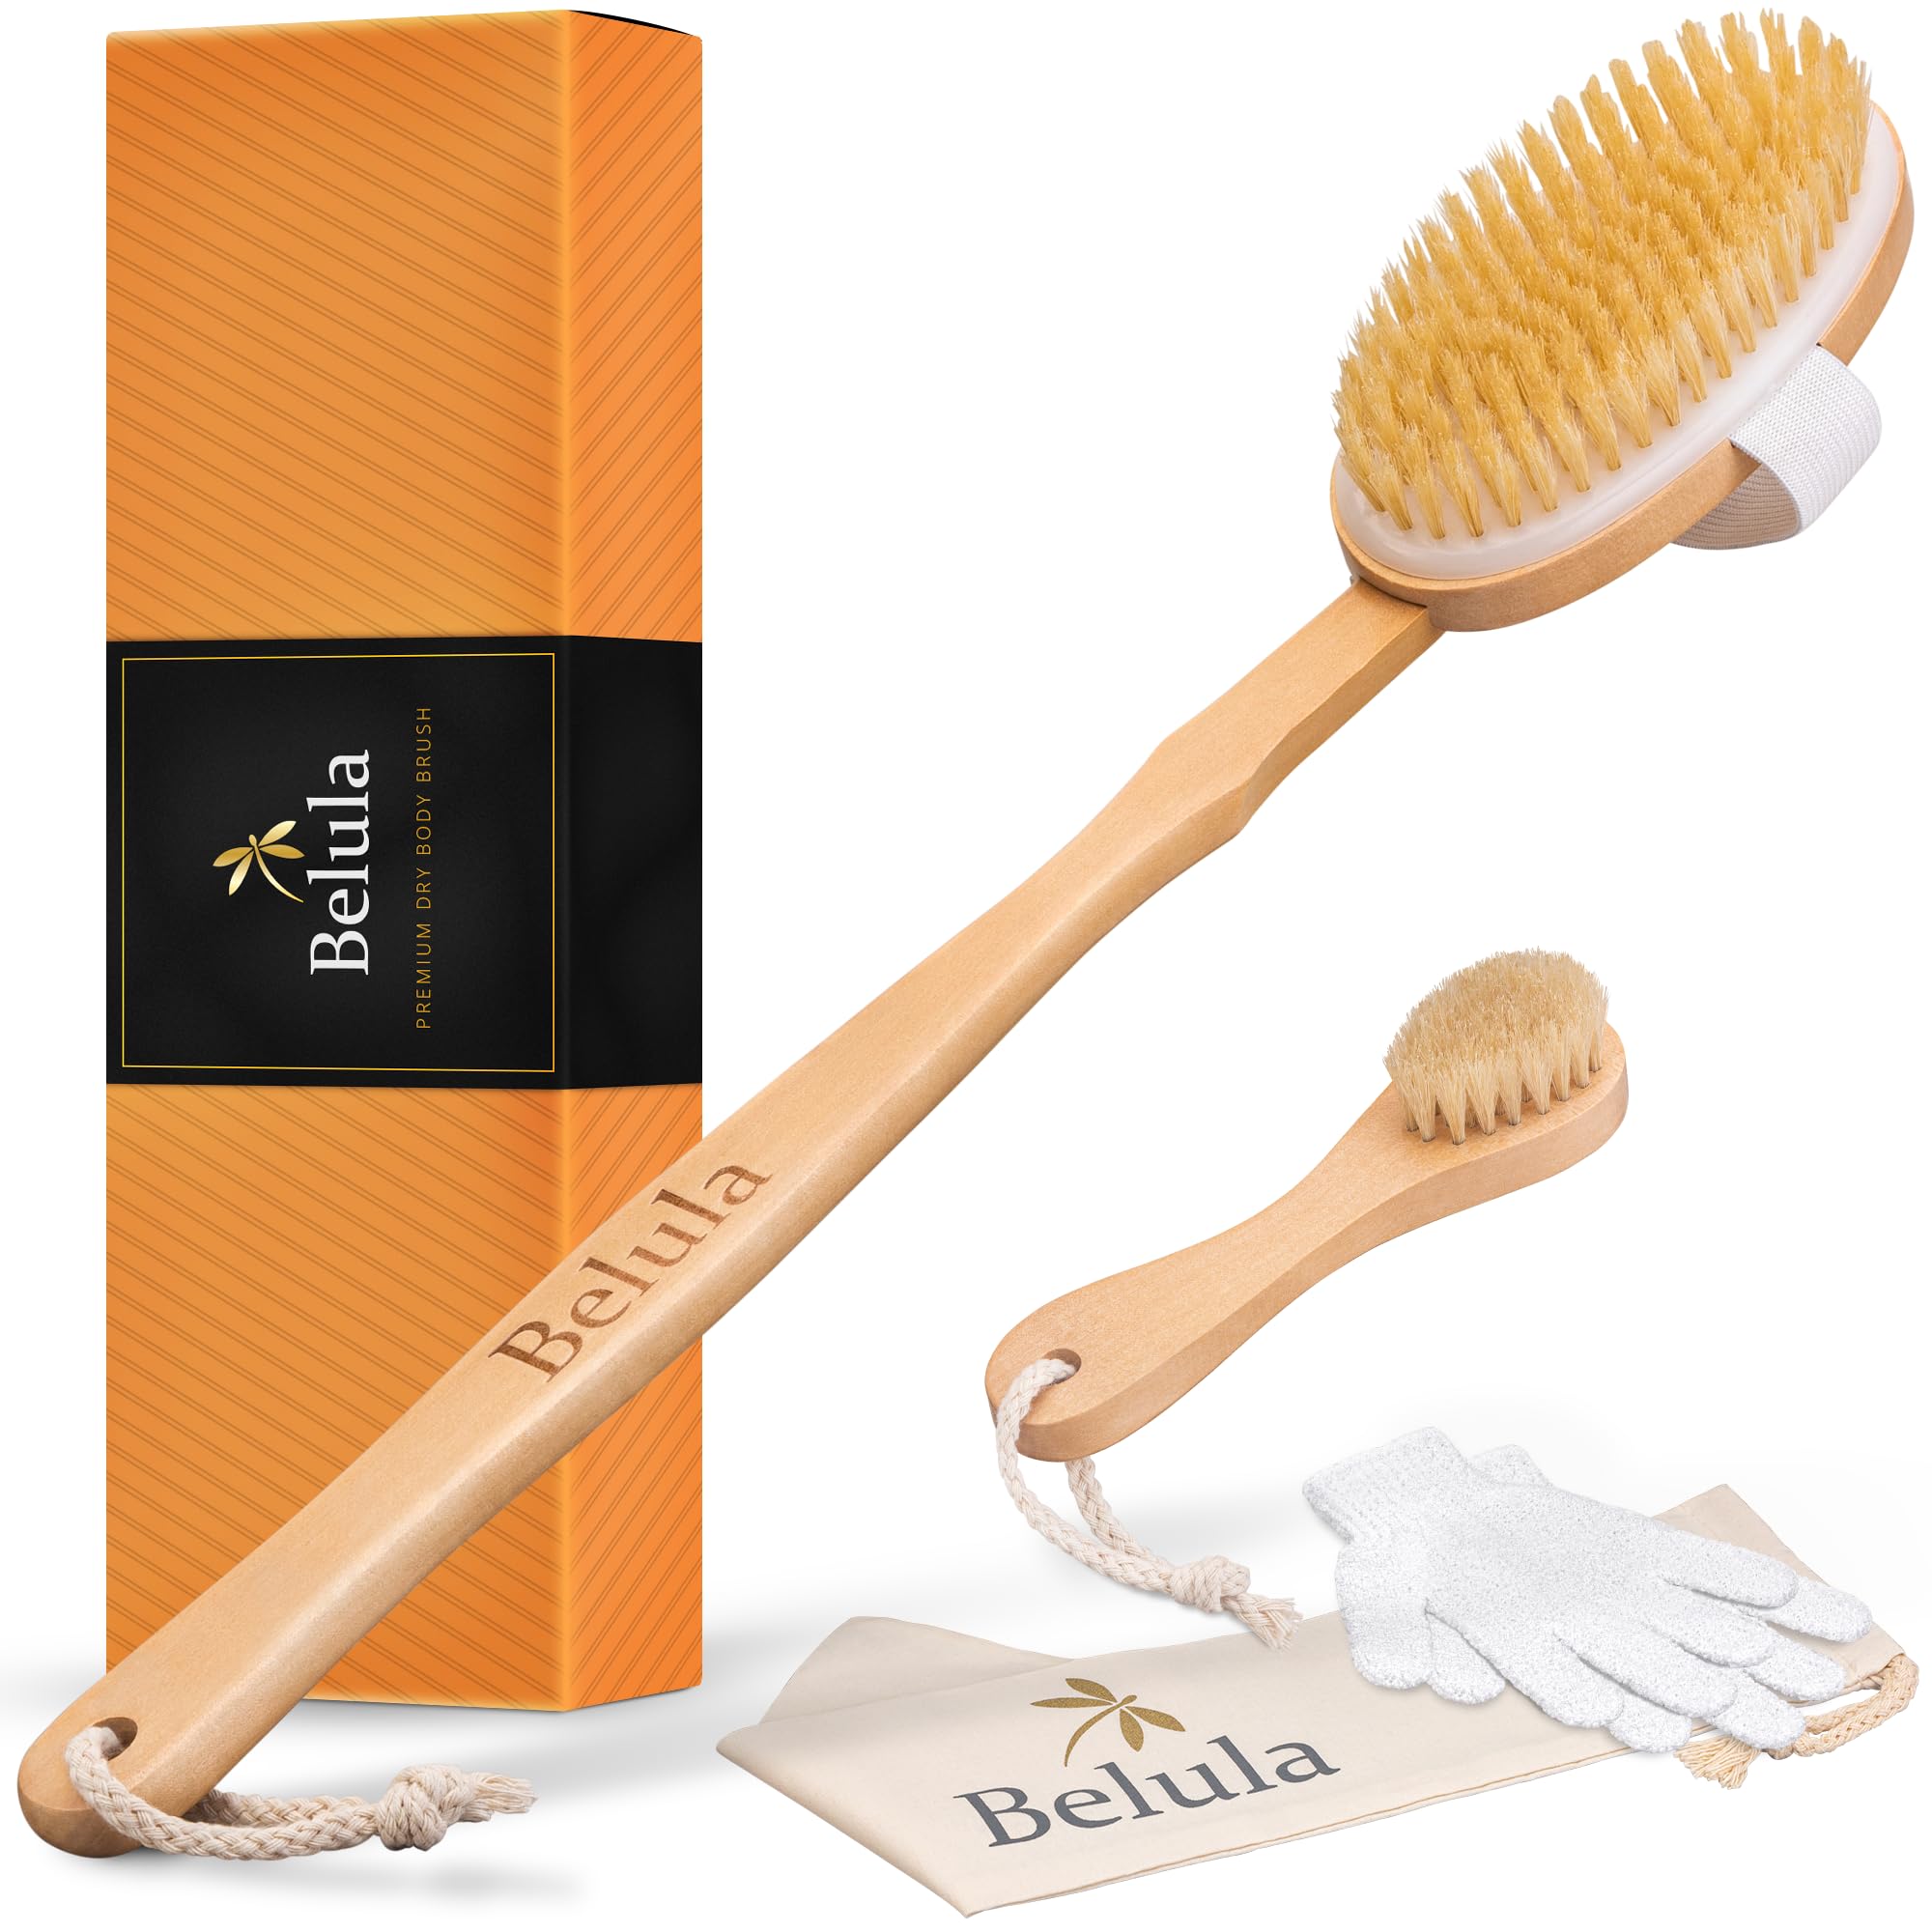 escompte élevé Belula Premium Dry Brushing Body Brush Set - Brossage a sec en poils de sanglier naturels, brosse pour le visage exfoliante & une paire de gants de douche. Sac et mode d´emploi gratuits & Idée cadeau U2Y8fonVE boutique en ligne